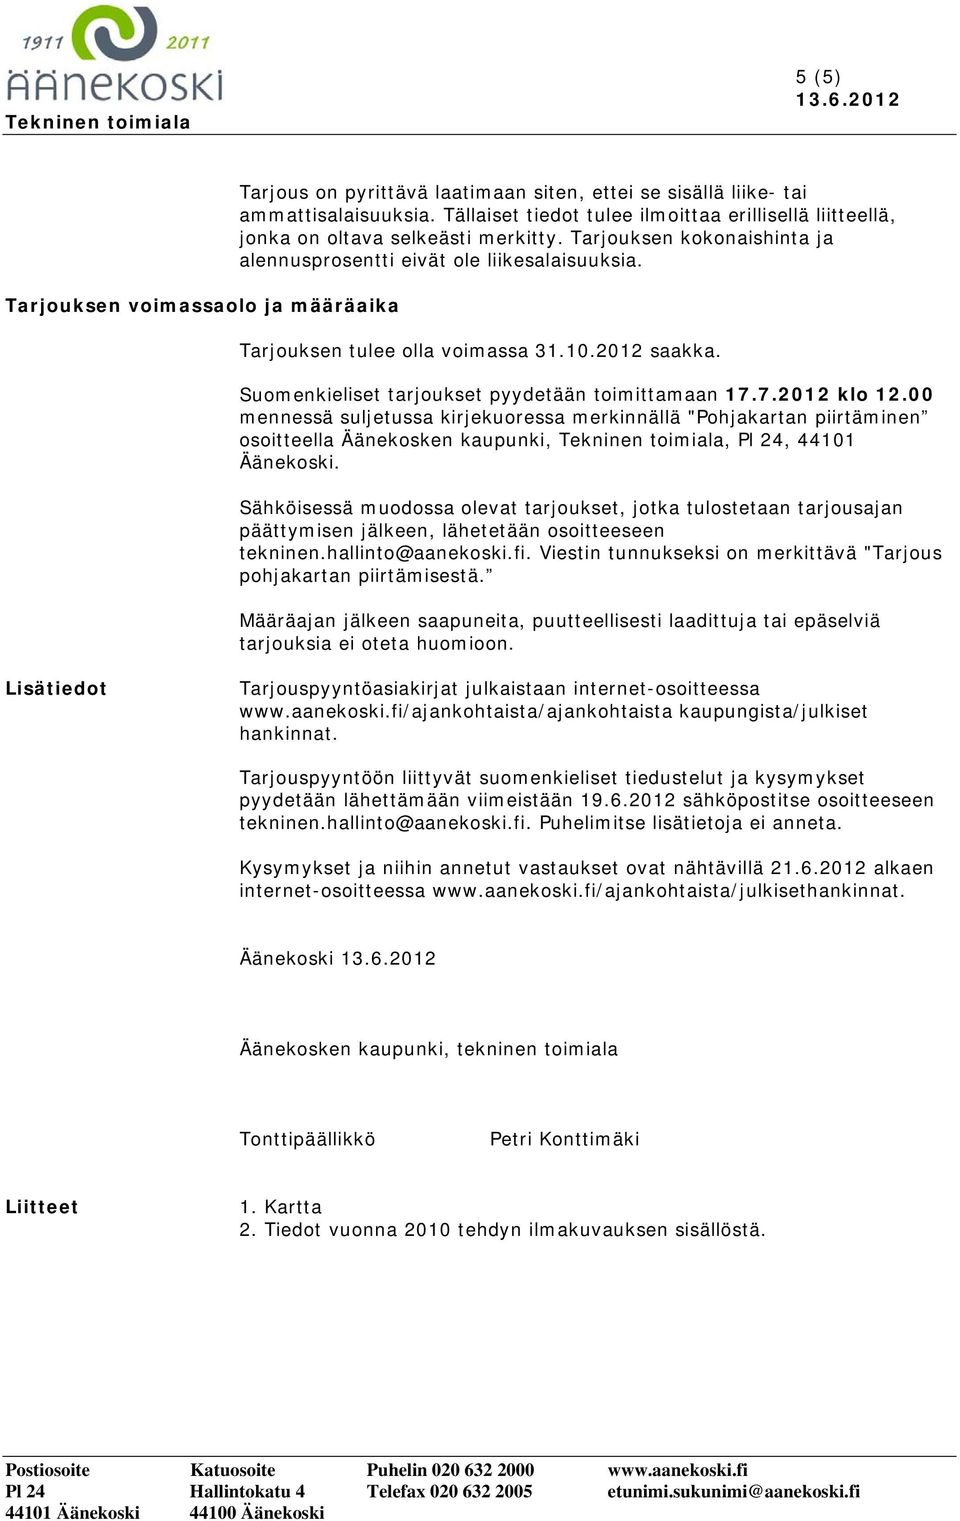 Tarjouksen tulee olla voimassa 31.10.2012 saakka. Suomenkieliset tarjoukset pyydetään toimittamaan 17.7.2012 klo 12.